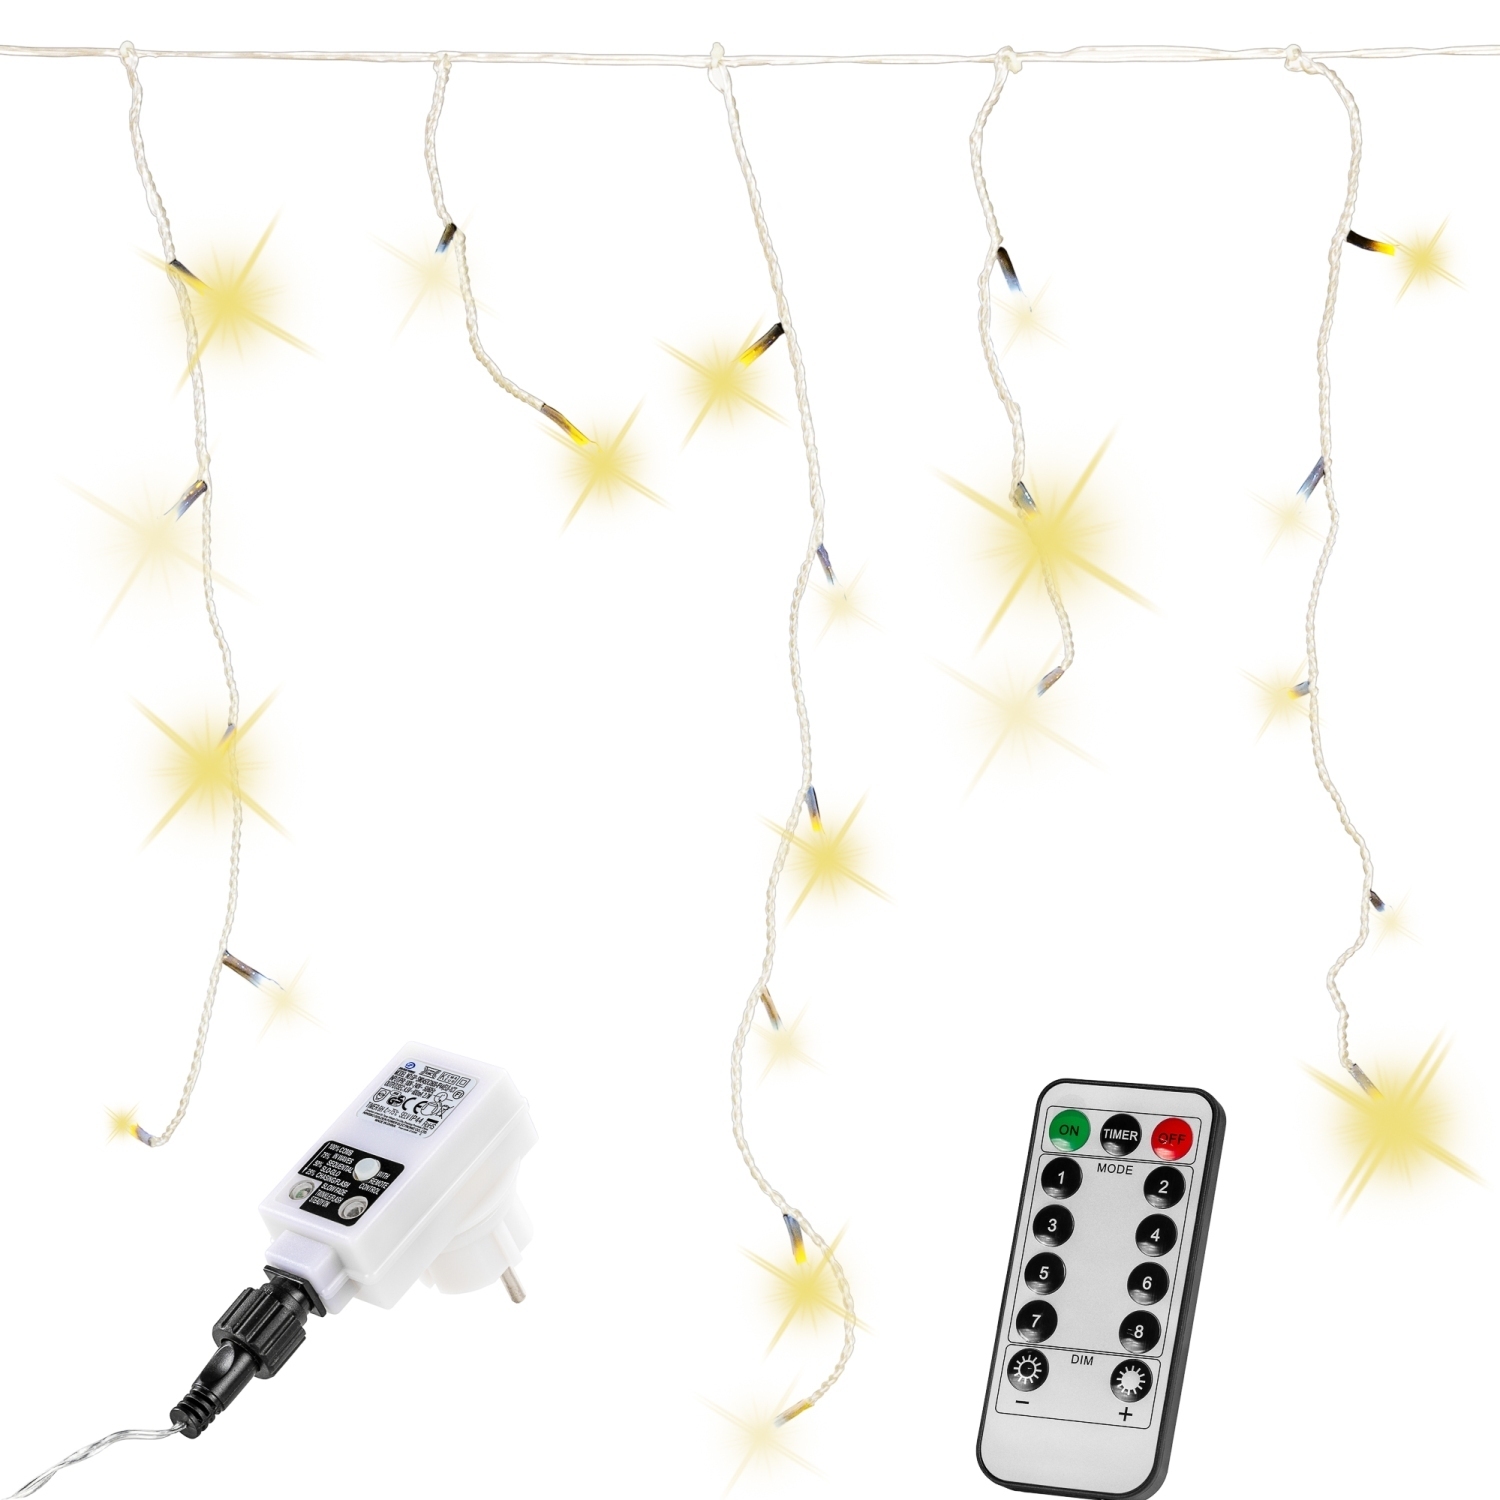 Lichtgordijn – Ijspegelverlichting – Voor Binnen en Buiten – Met afstandsbediening – 20 m – Warm wit